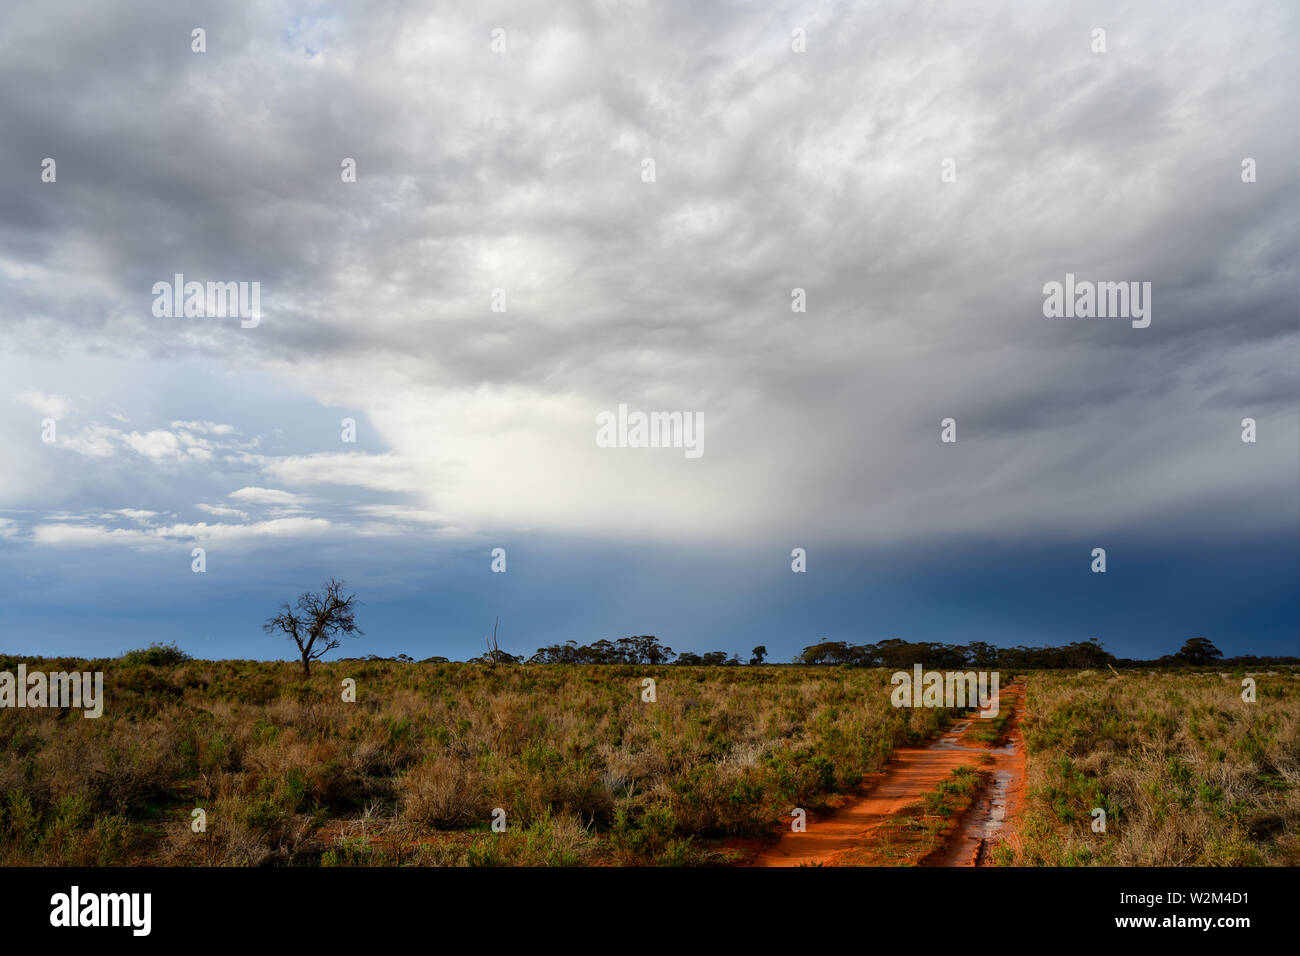 Piste sablonneuse avec des piscines d'eau après la douche de pluie. Le nord-ouest de Victoria, Australie. Banque D'Images